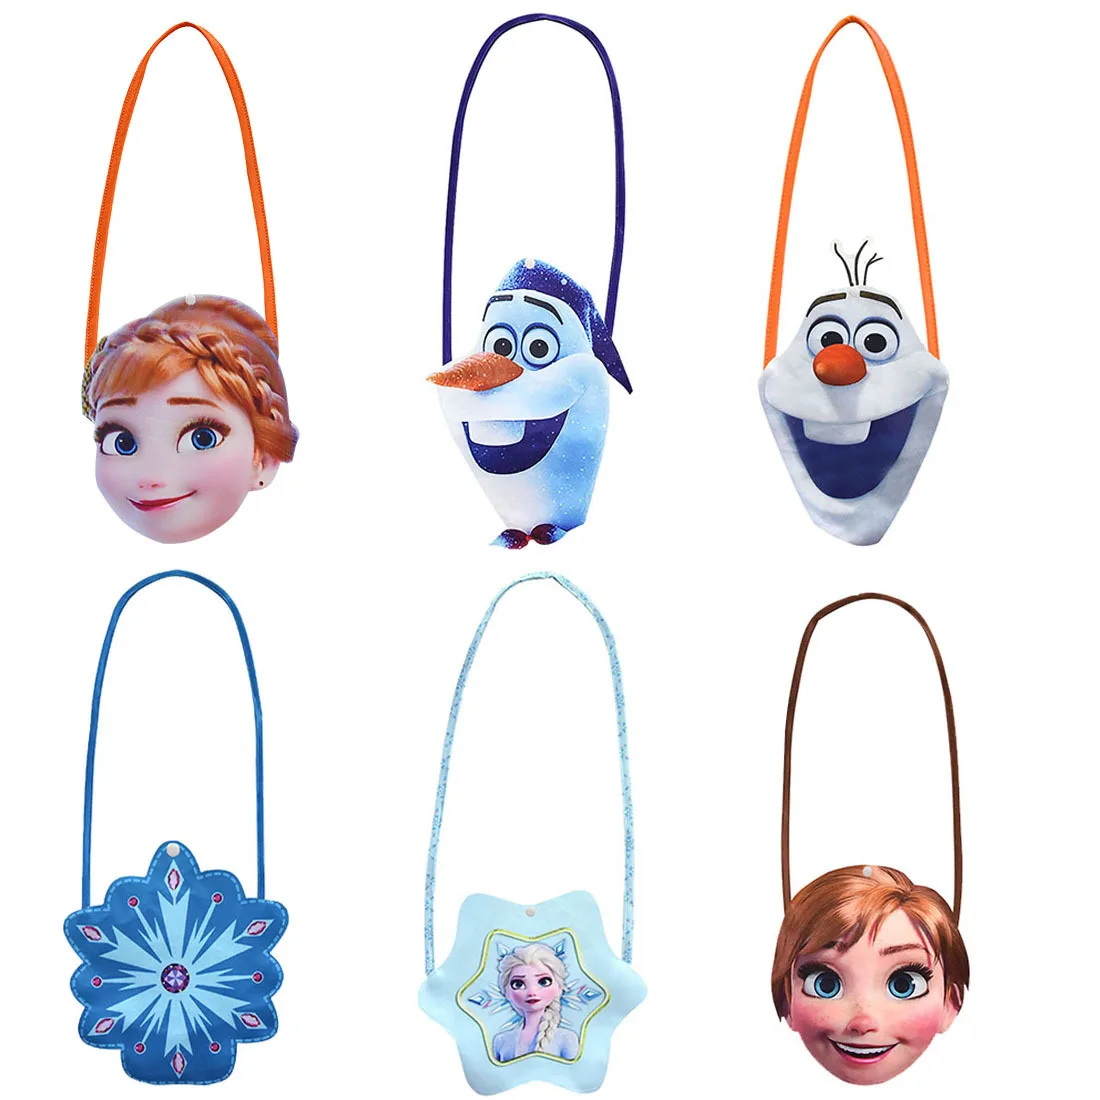 

Disney Frozen2 New Cartoon Bag Anna Elsa Olaf Snowflower Anime Figure Children's Small Shoulder Bag Girl's Favorite Gift Toys